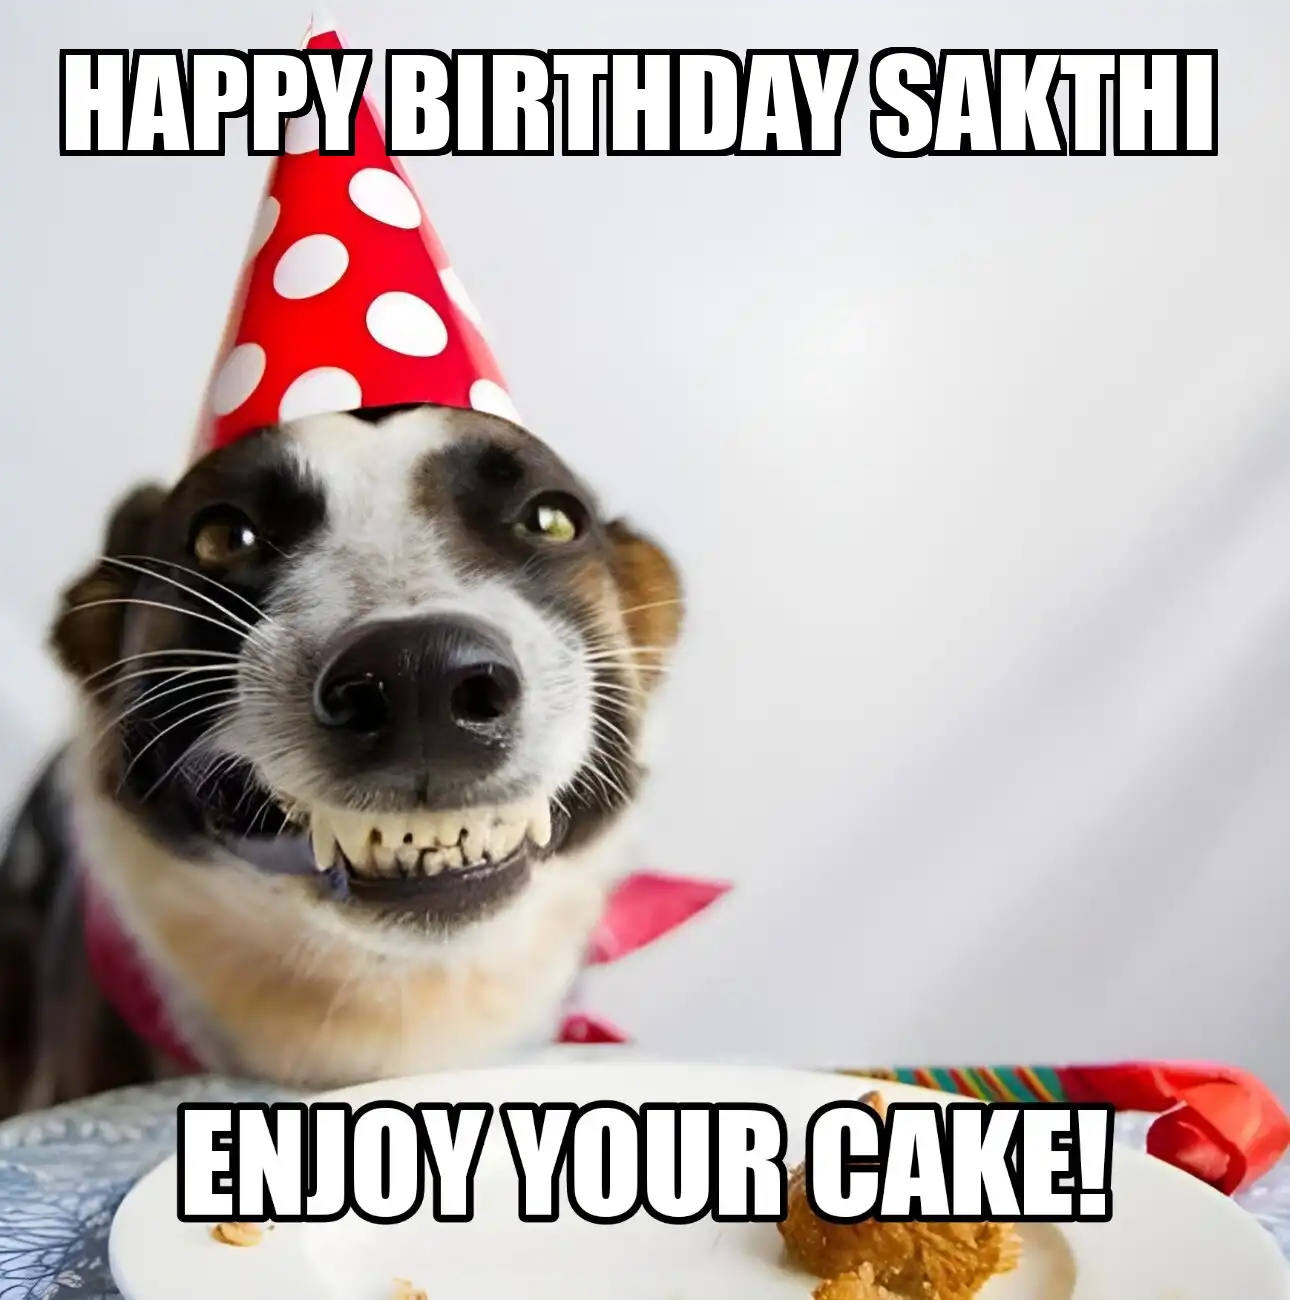 Happy Birthday Sakthi Enjoy Your Cake Dog Meme